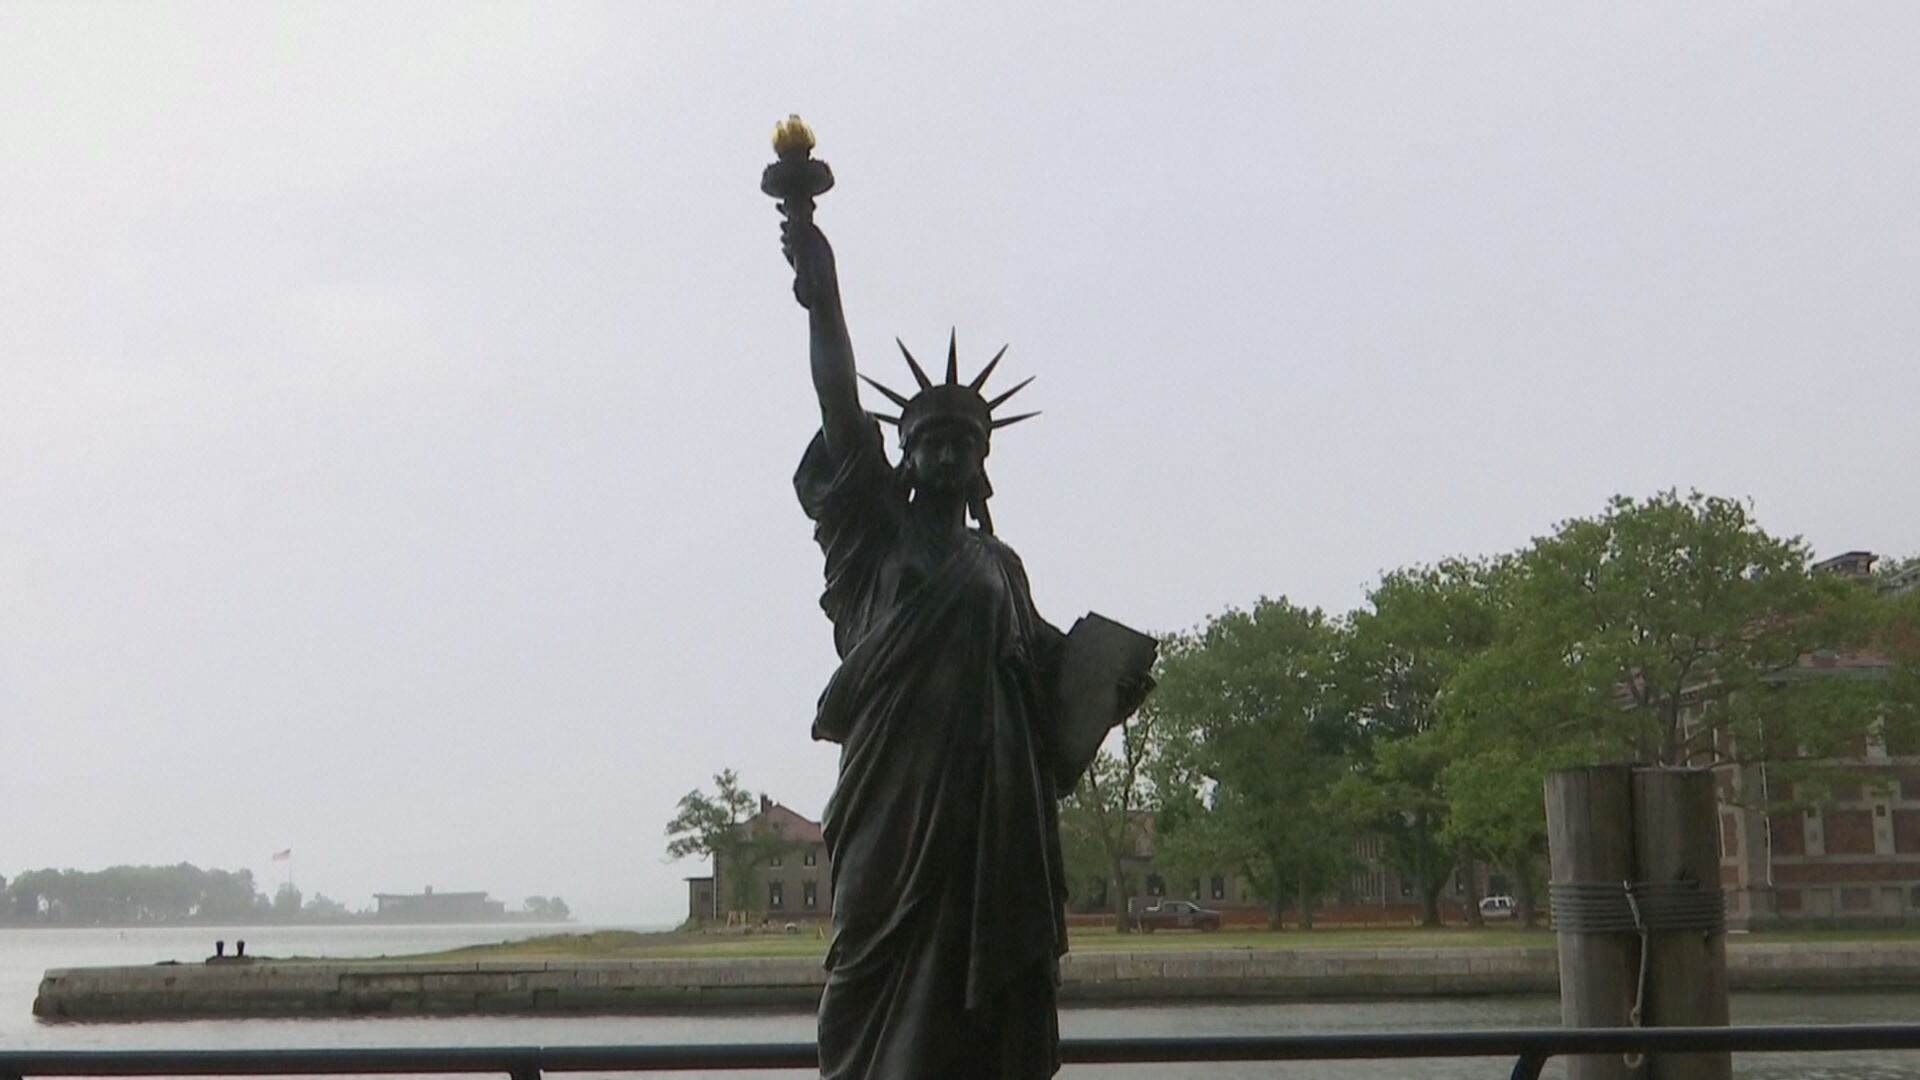 EUA recebe nova Estátua da Liberdade